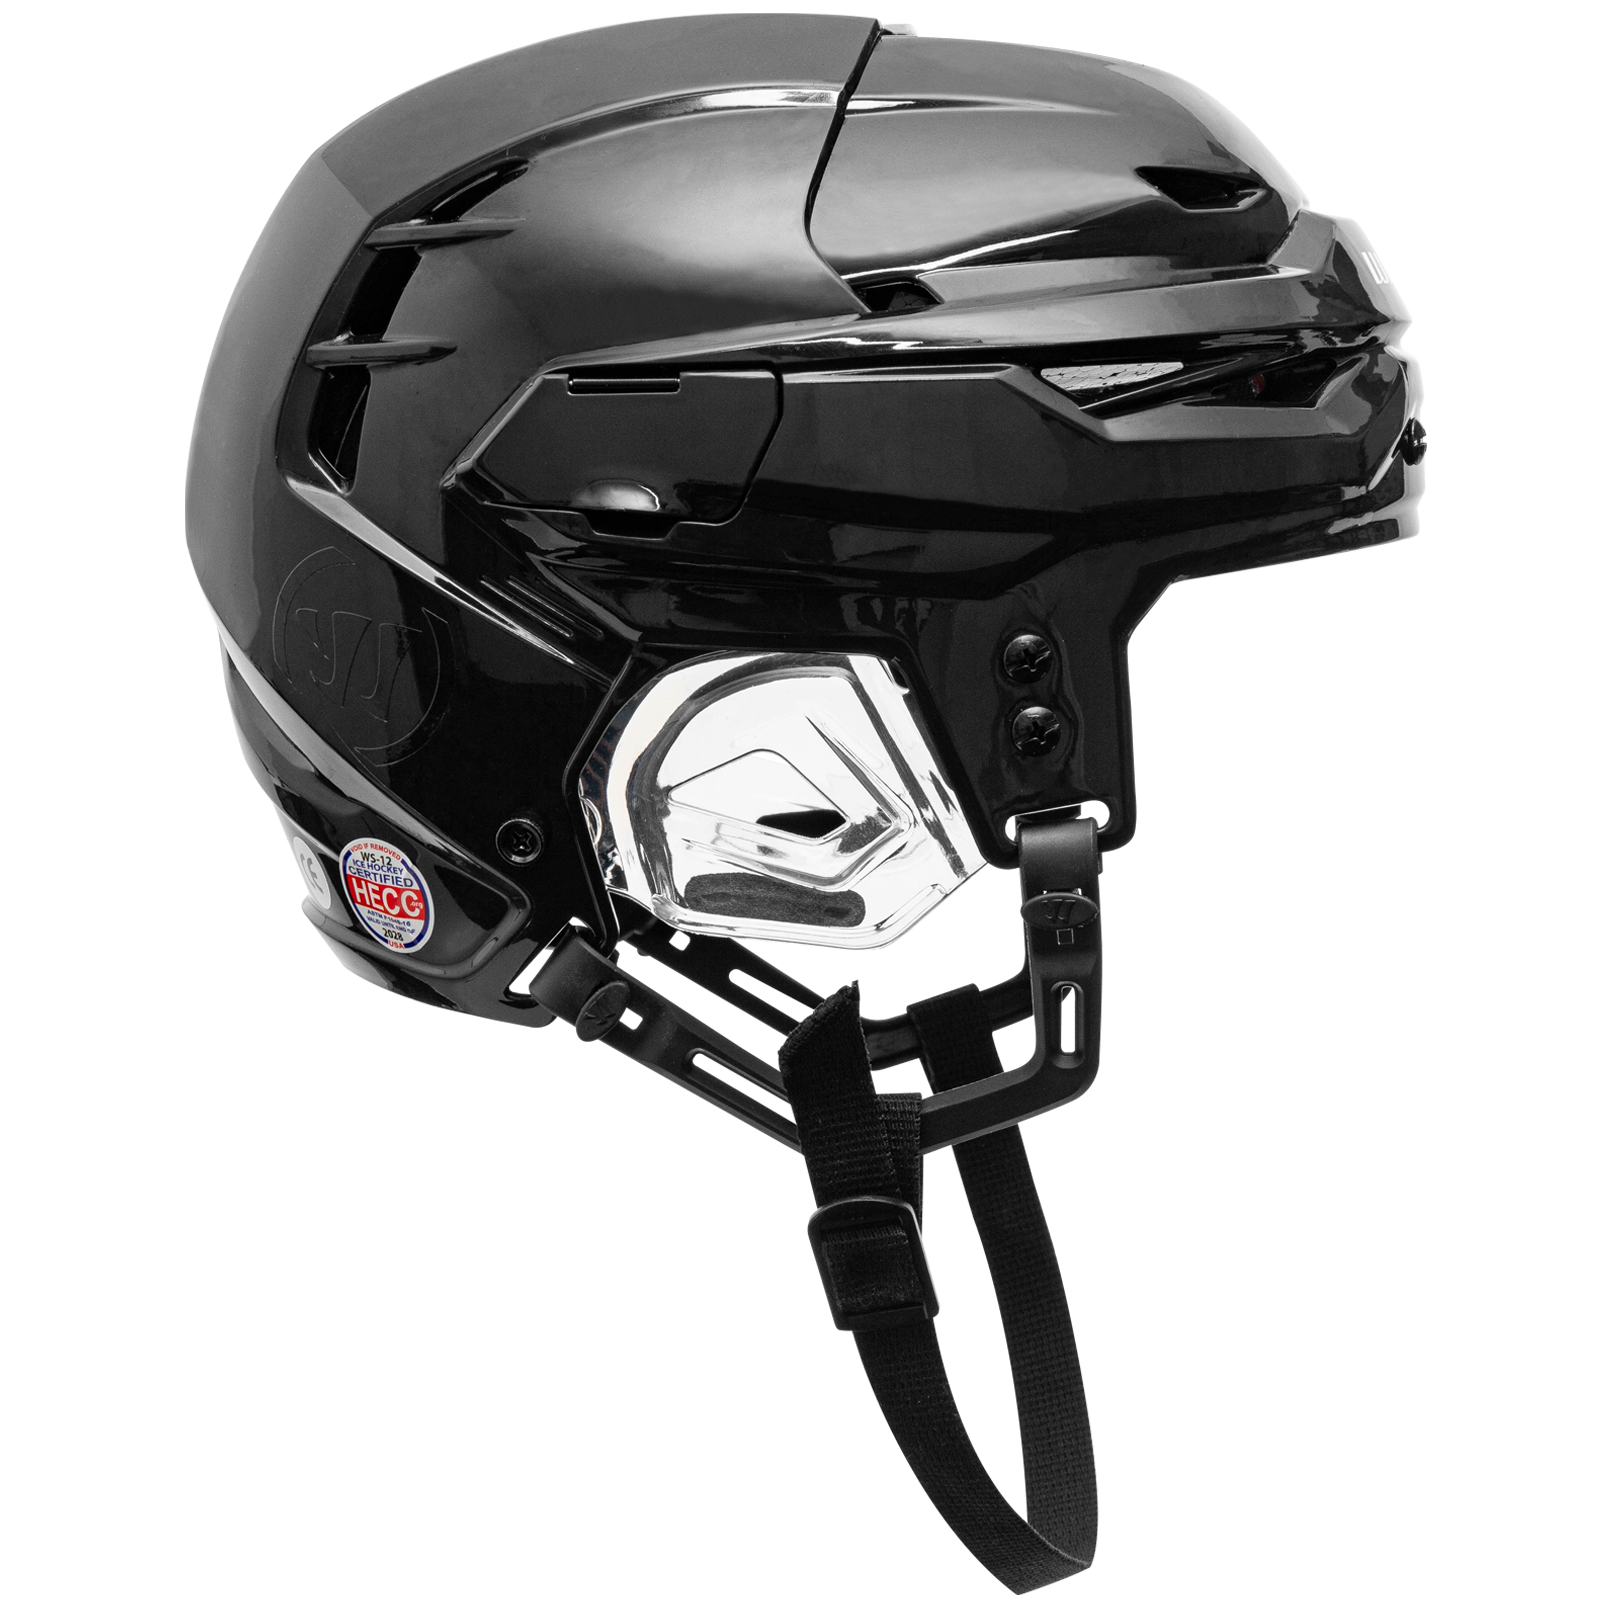 Warrior CF 100 Box Lacrosse Helmet